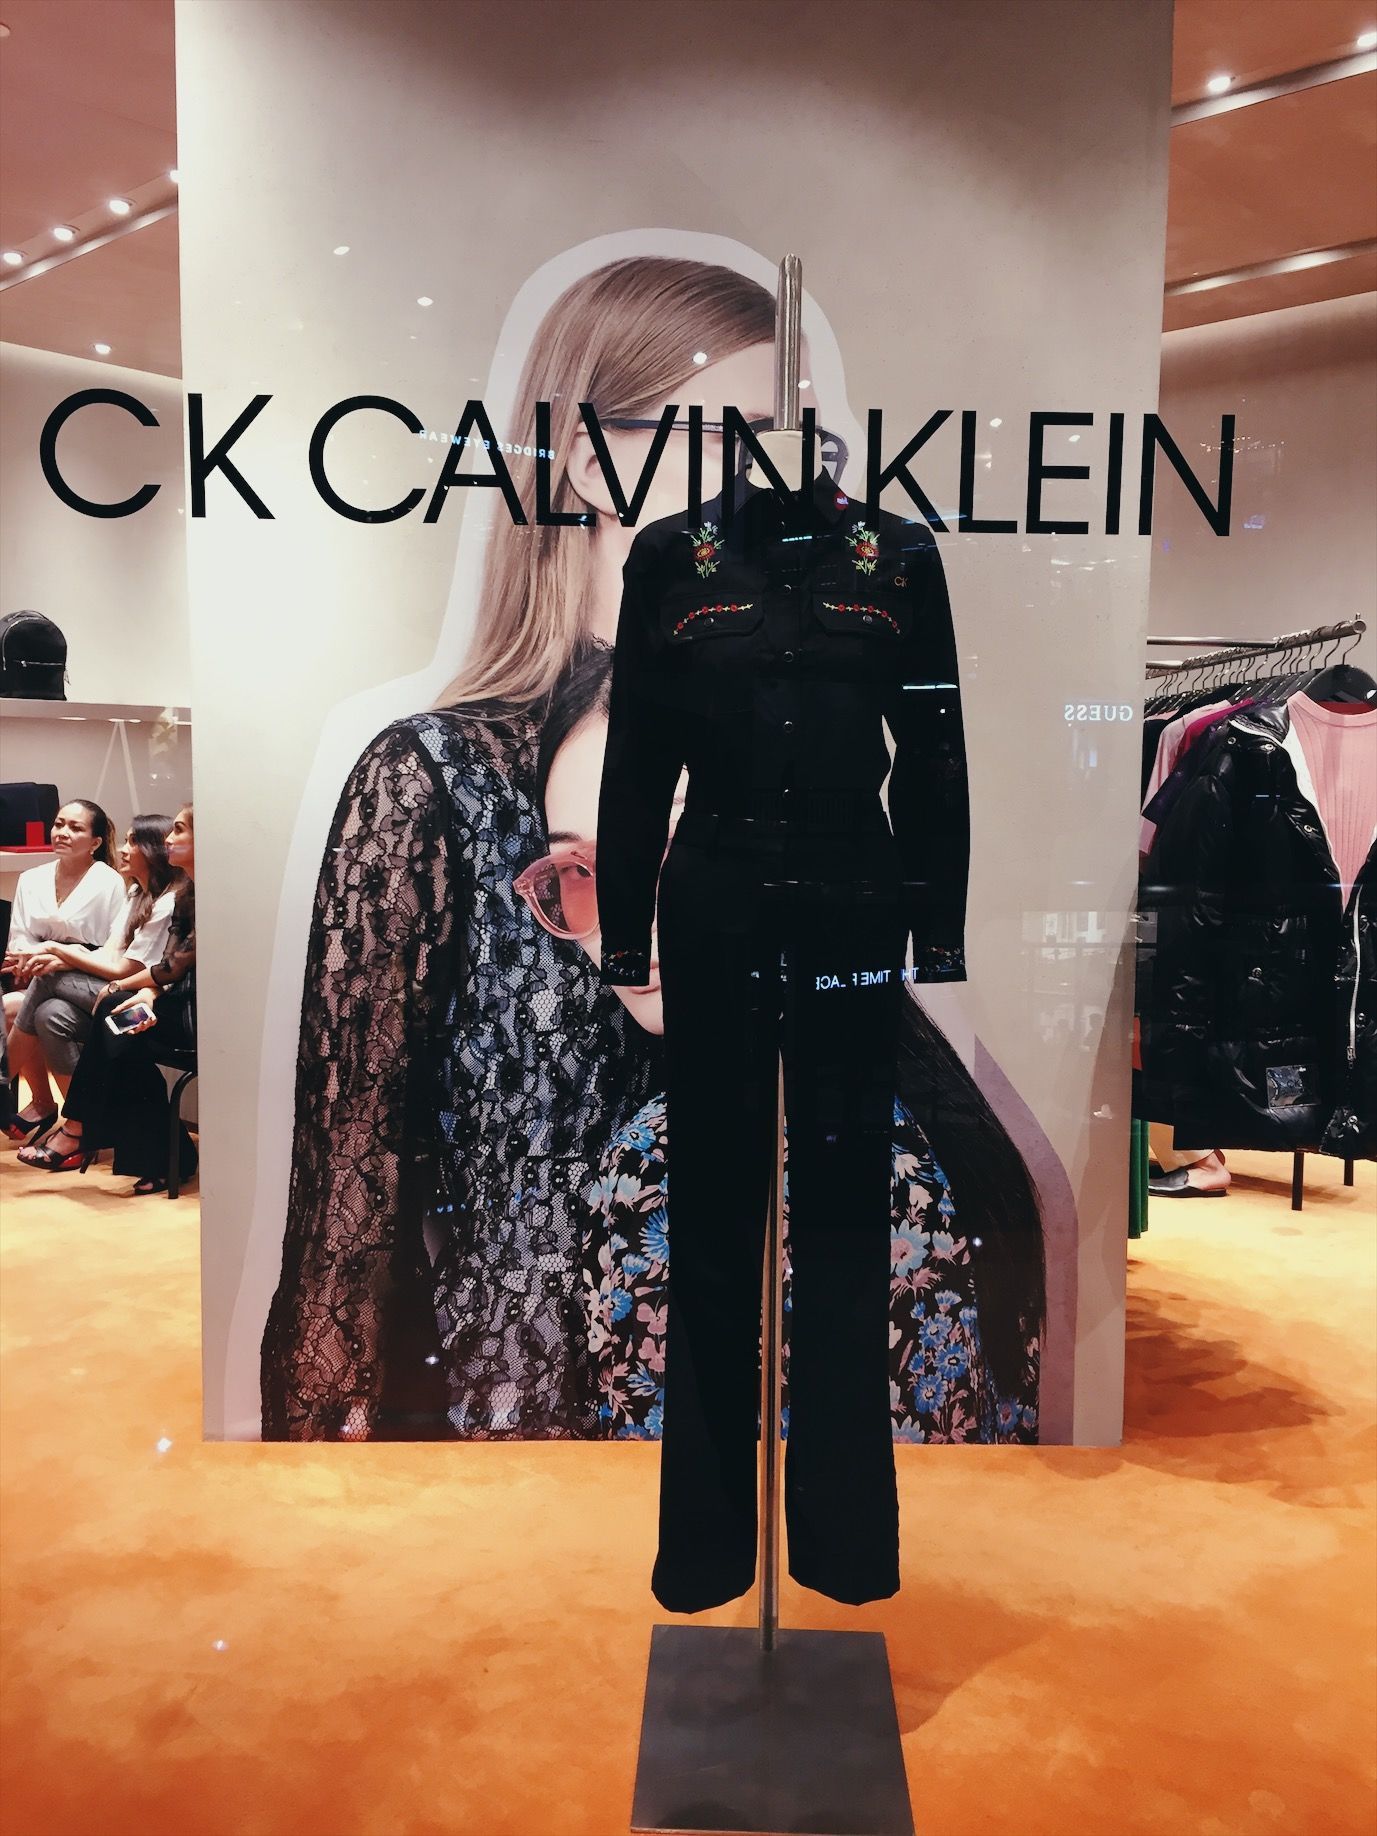 Gaya Minimalis di Butik CK Calvin Klein Plaza Senayan